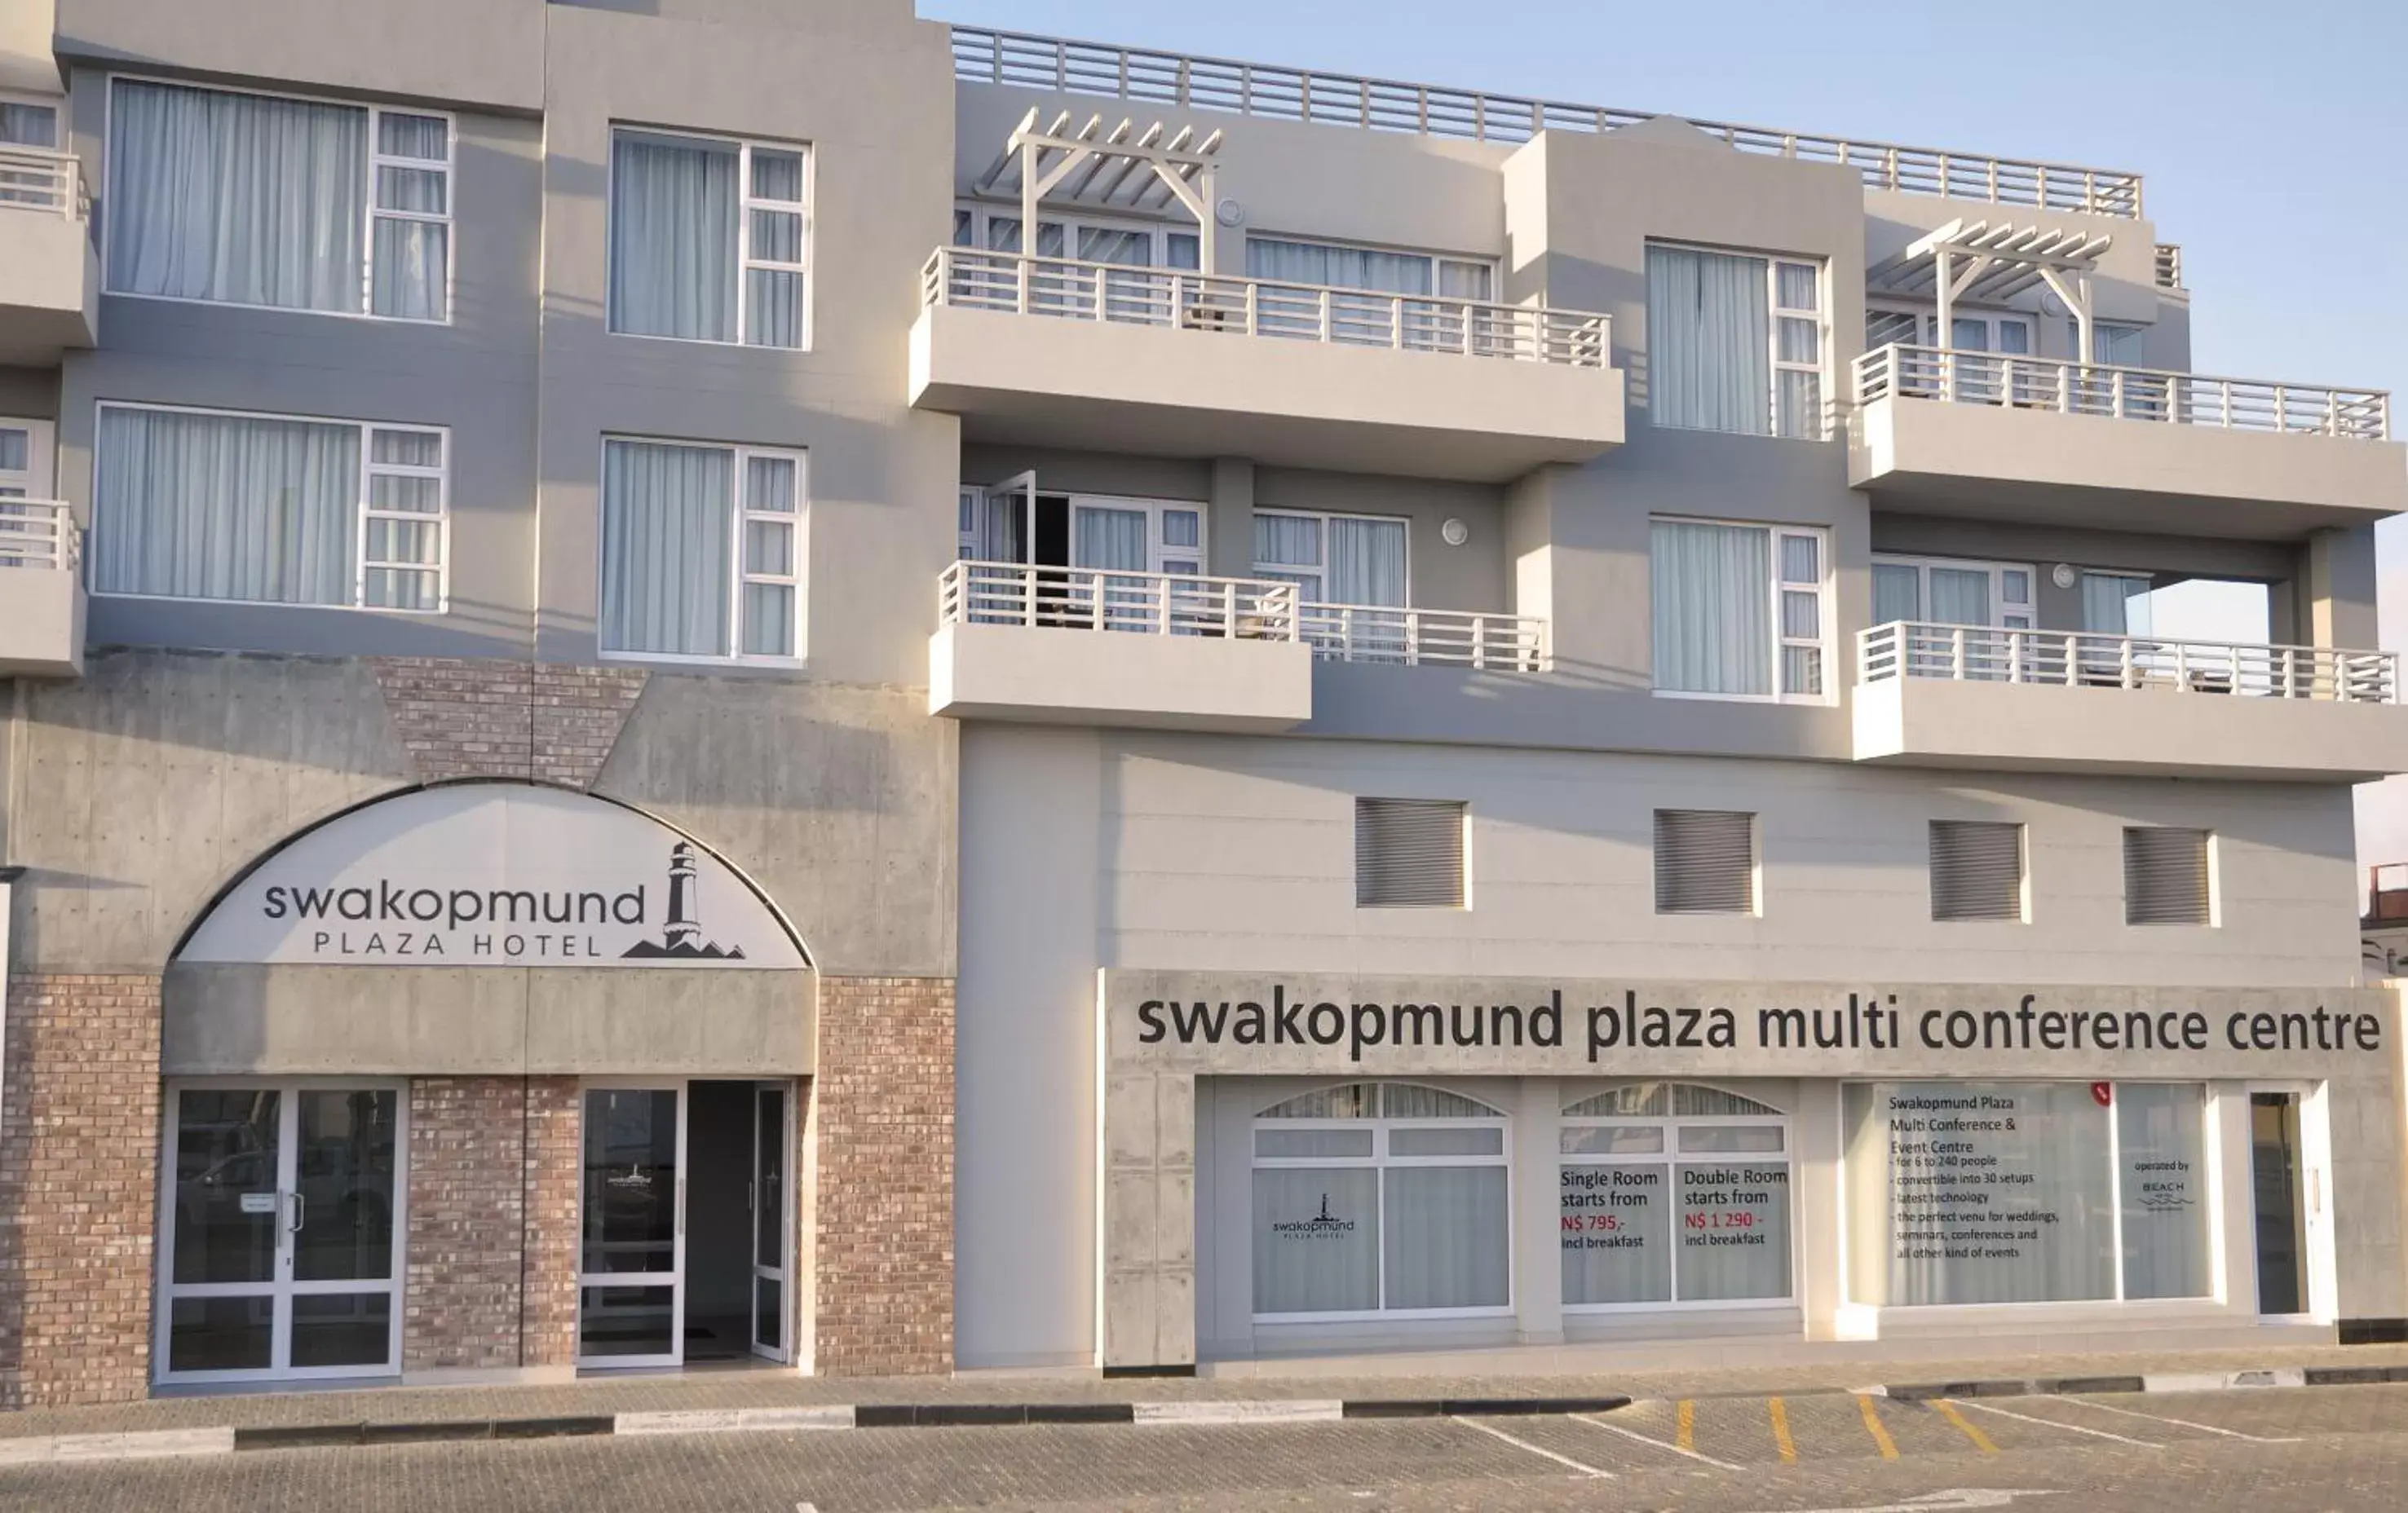 Facade/entrance, Property Building in Swakopmund Plaza Hotel